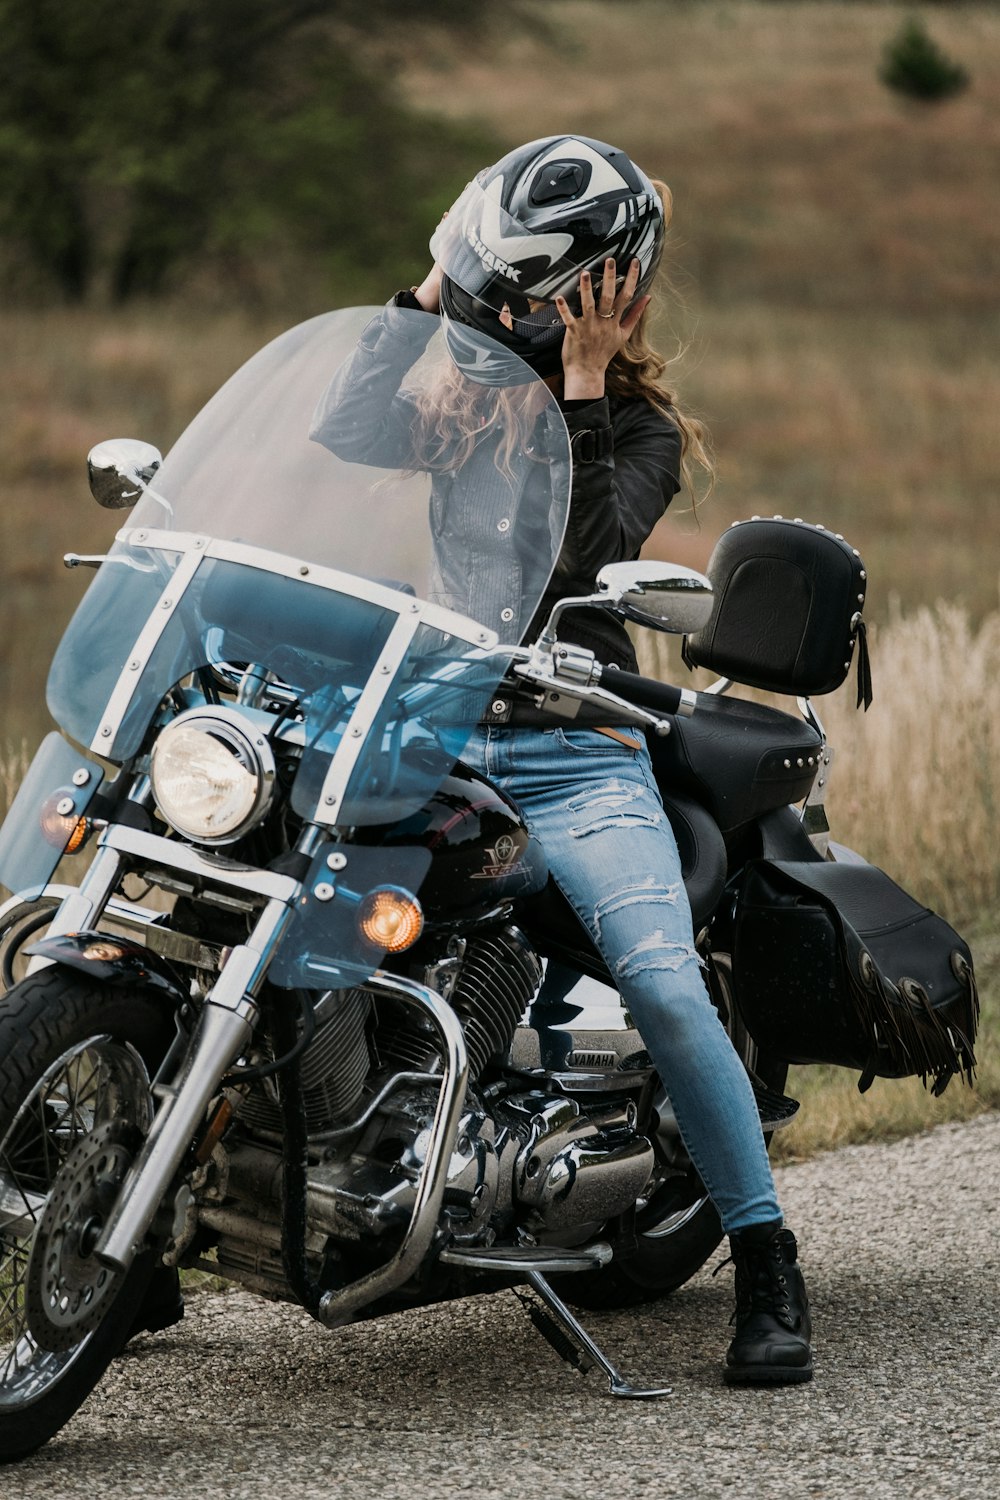 Frau fährt auf schwarz-grauem Motorrad